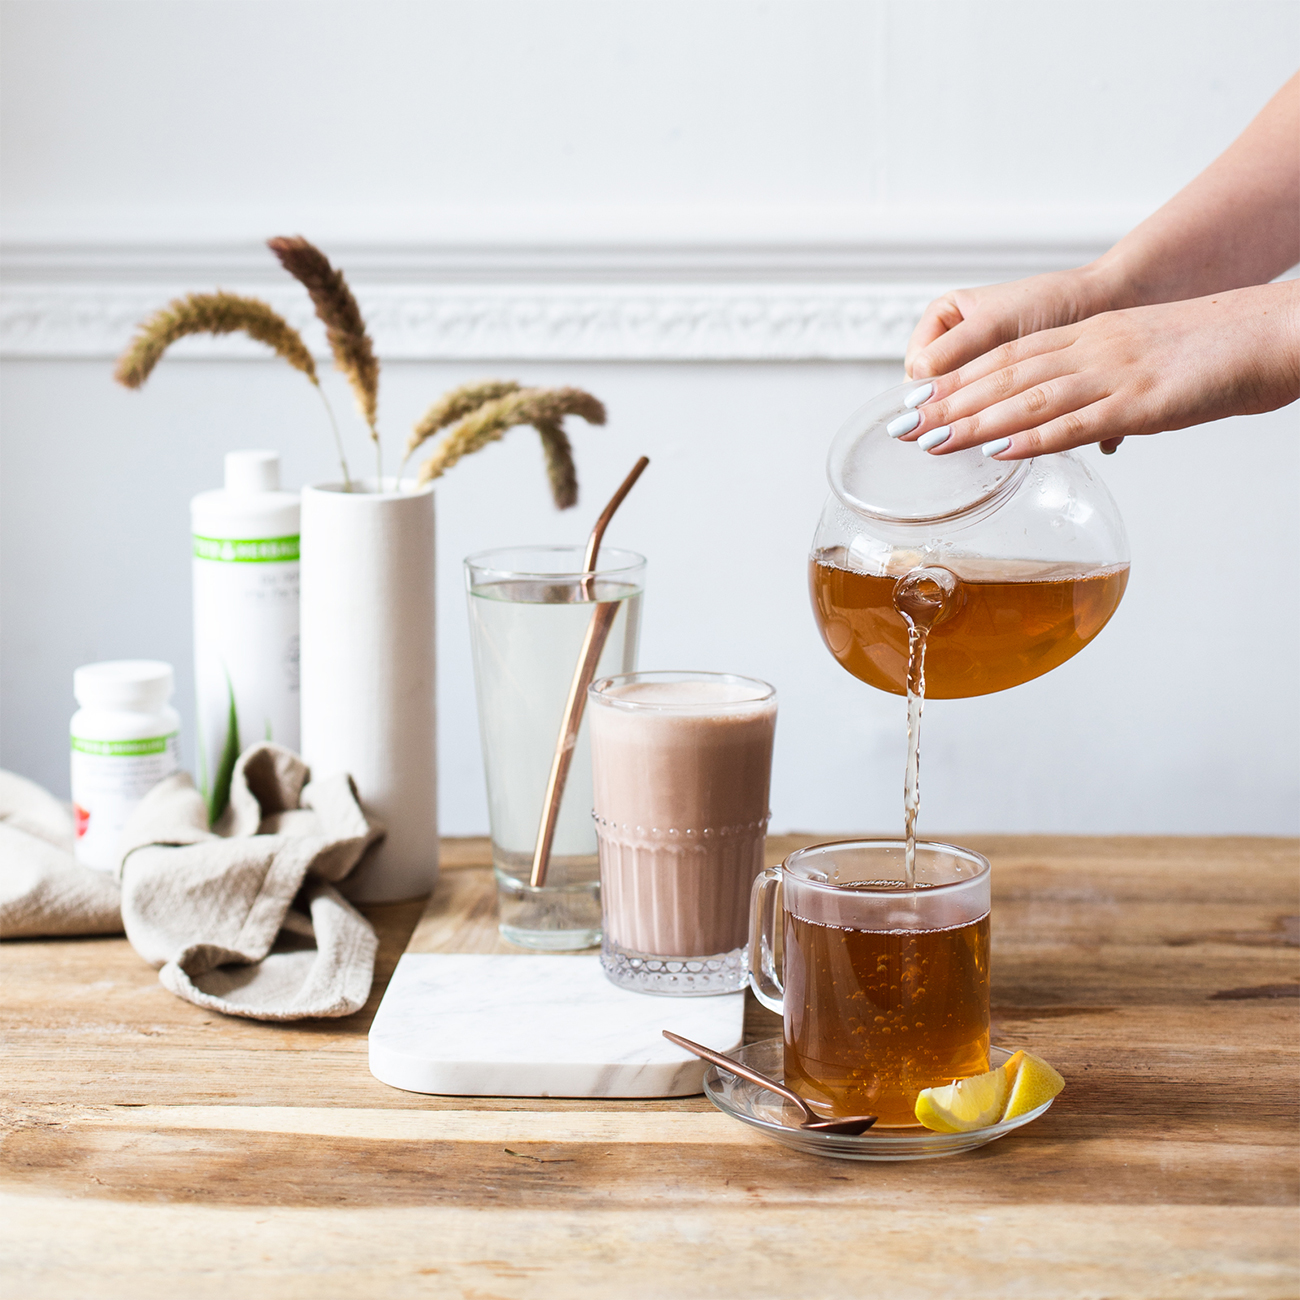 herbalife nutrition velafbalanceret morgenmad og håndophældt citronte te i en kop